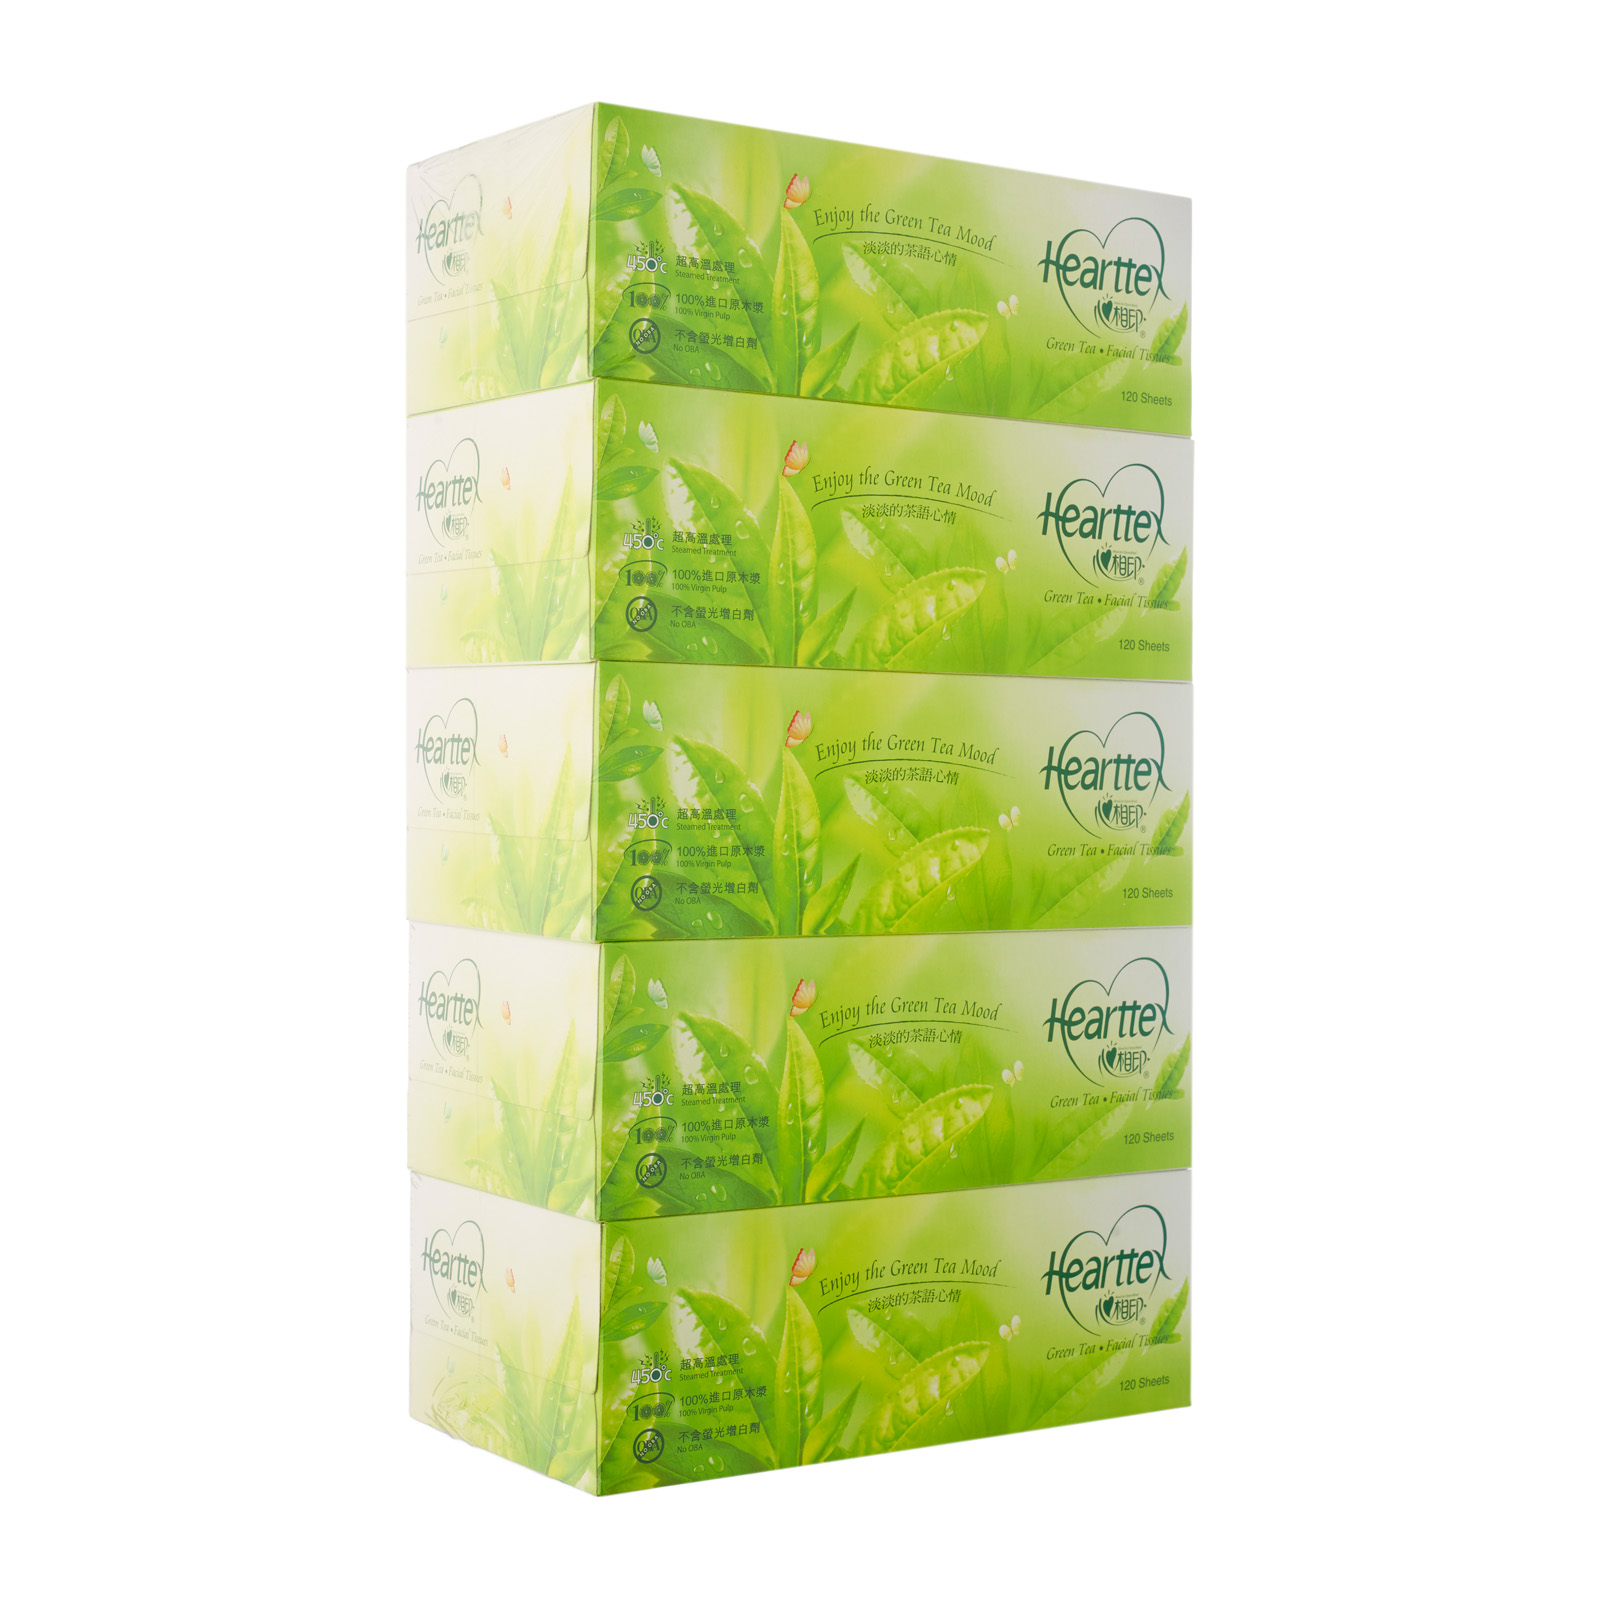 Hearttex Green Tea Box Tissue 0 - from RedMart